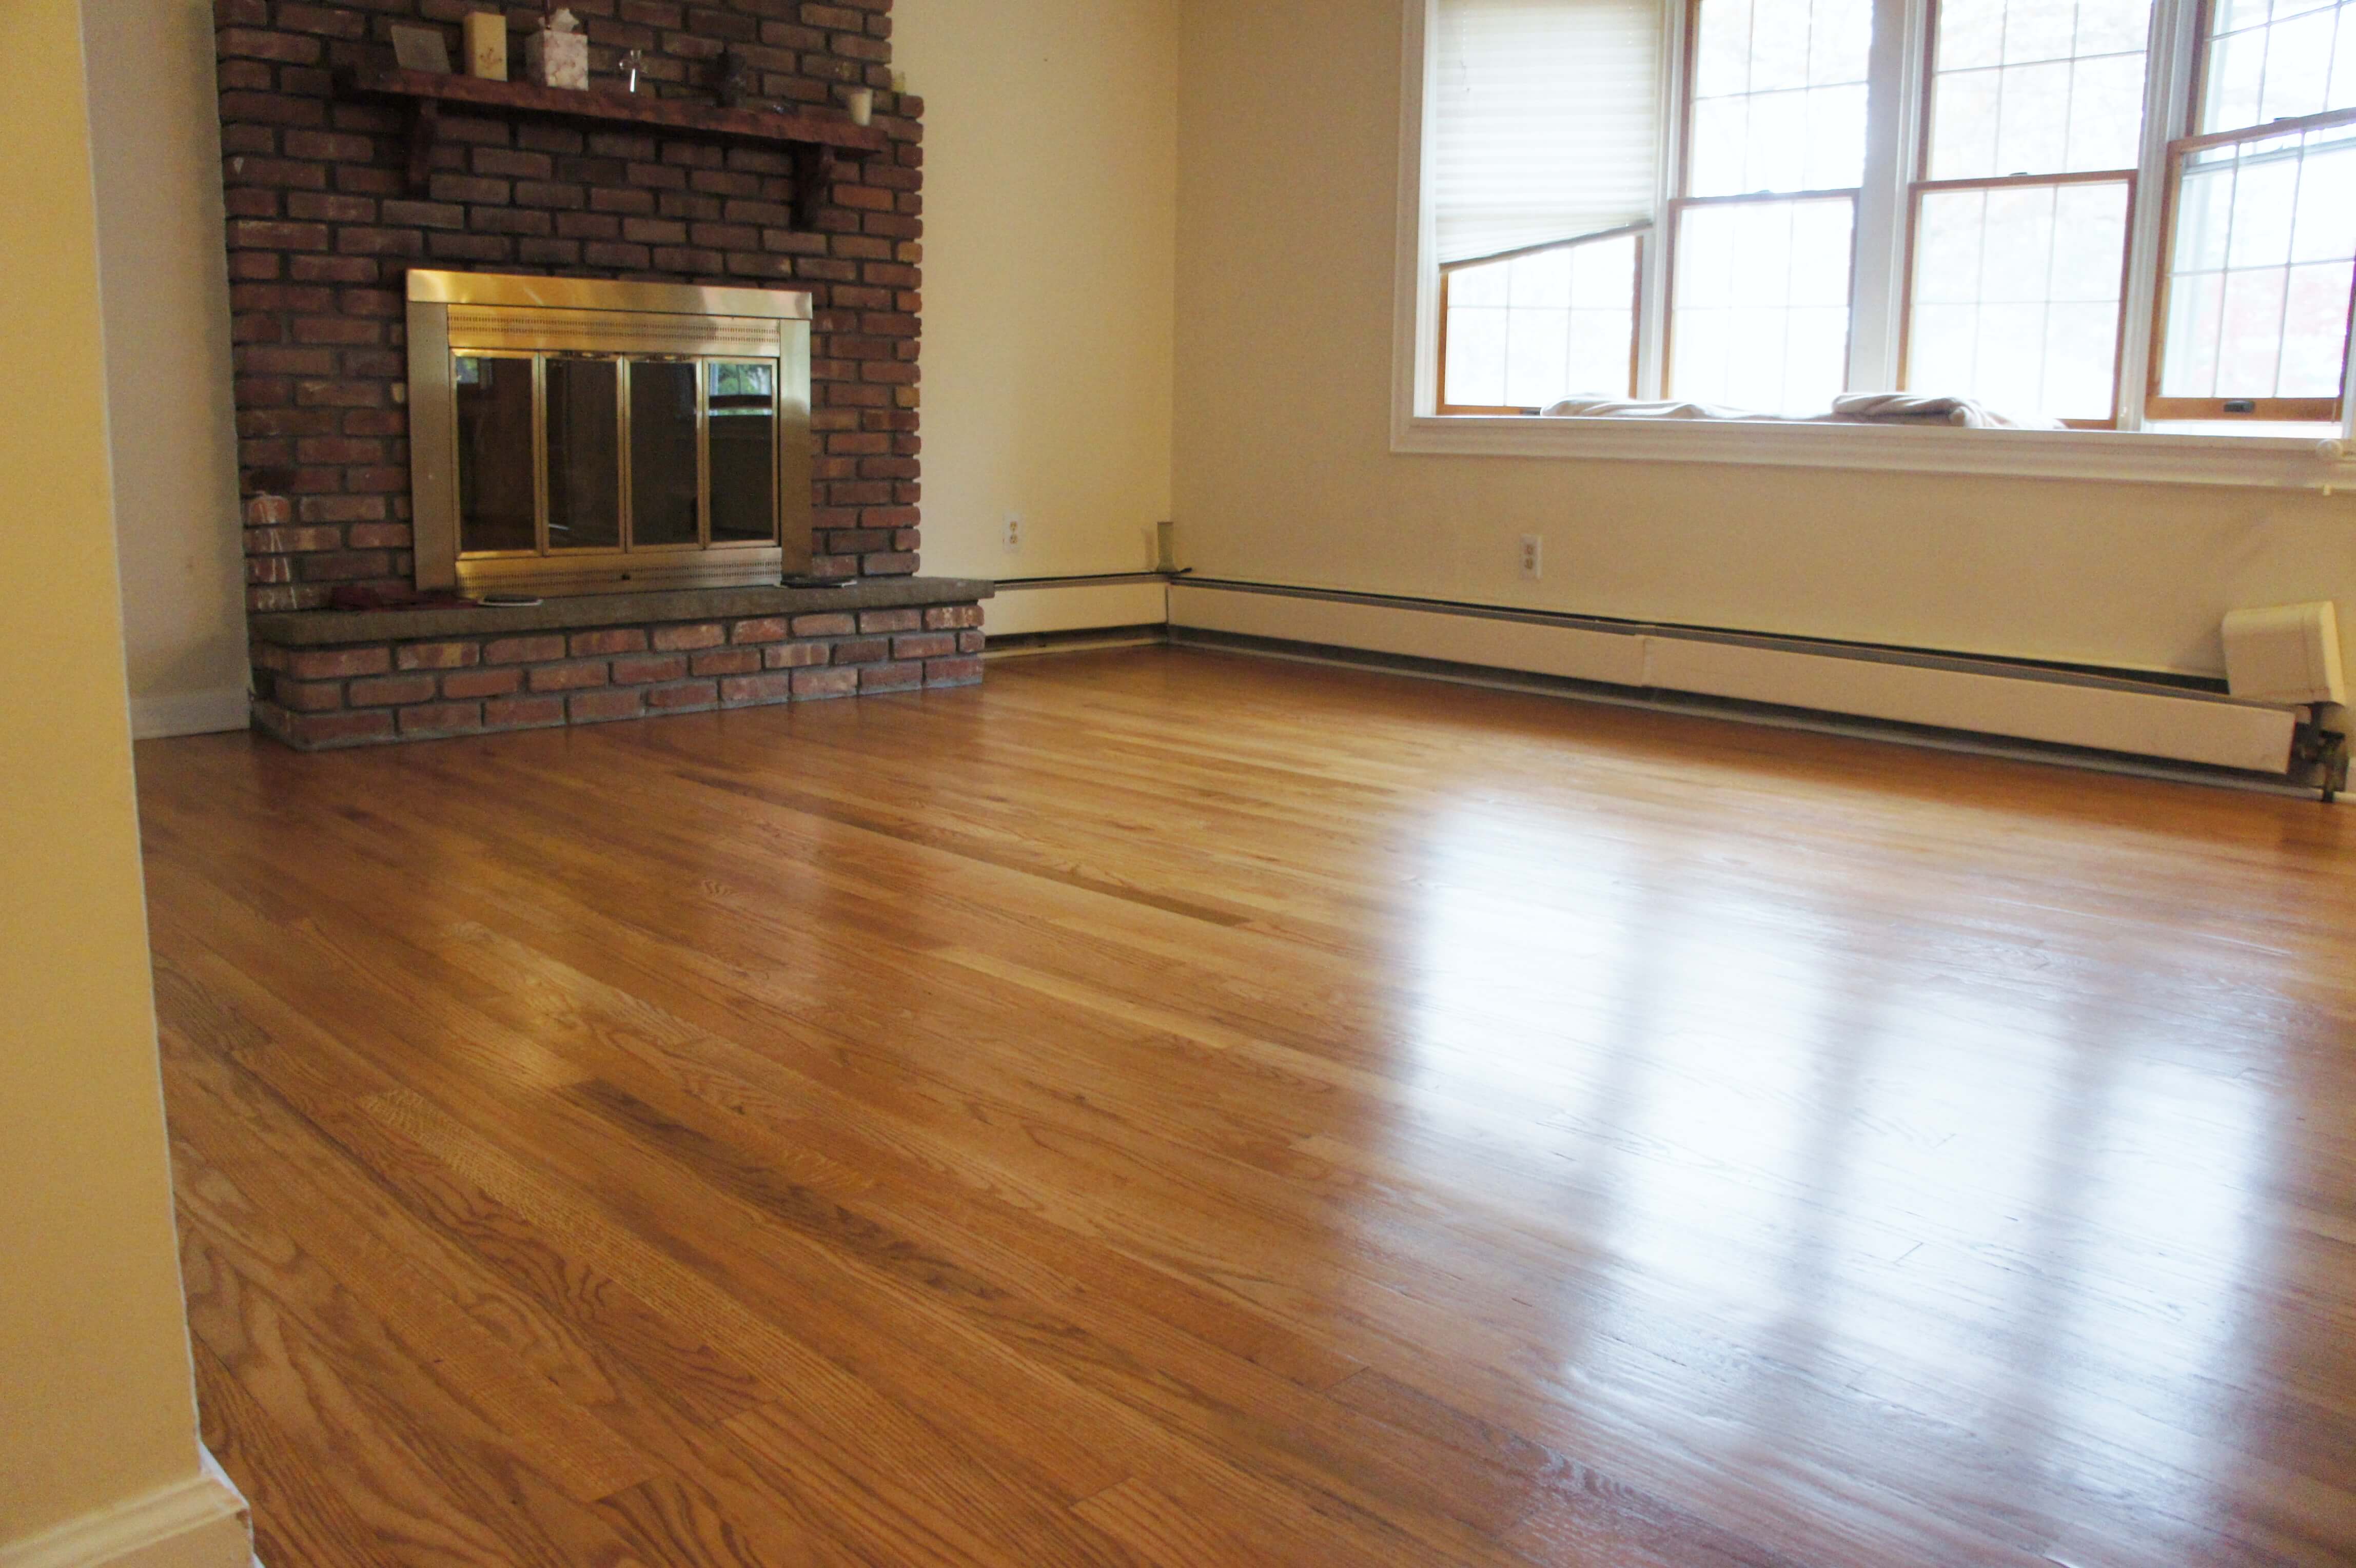 Dustless Hardwood Floor Solution In, Dustless Hardwood Floor Refinishing Nj